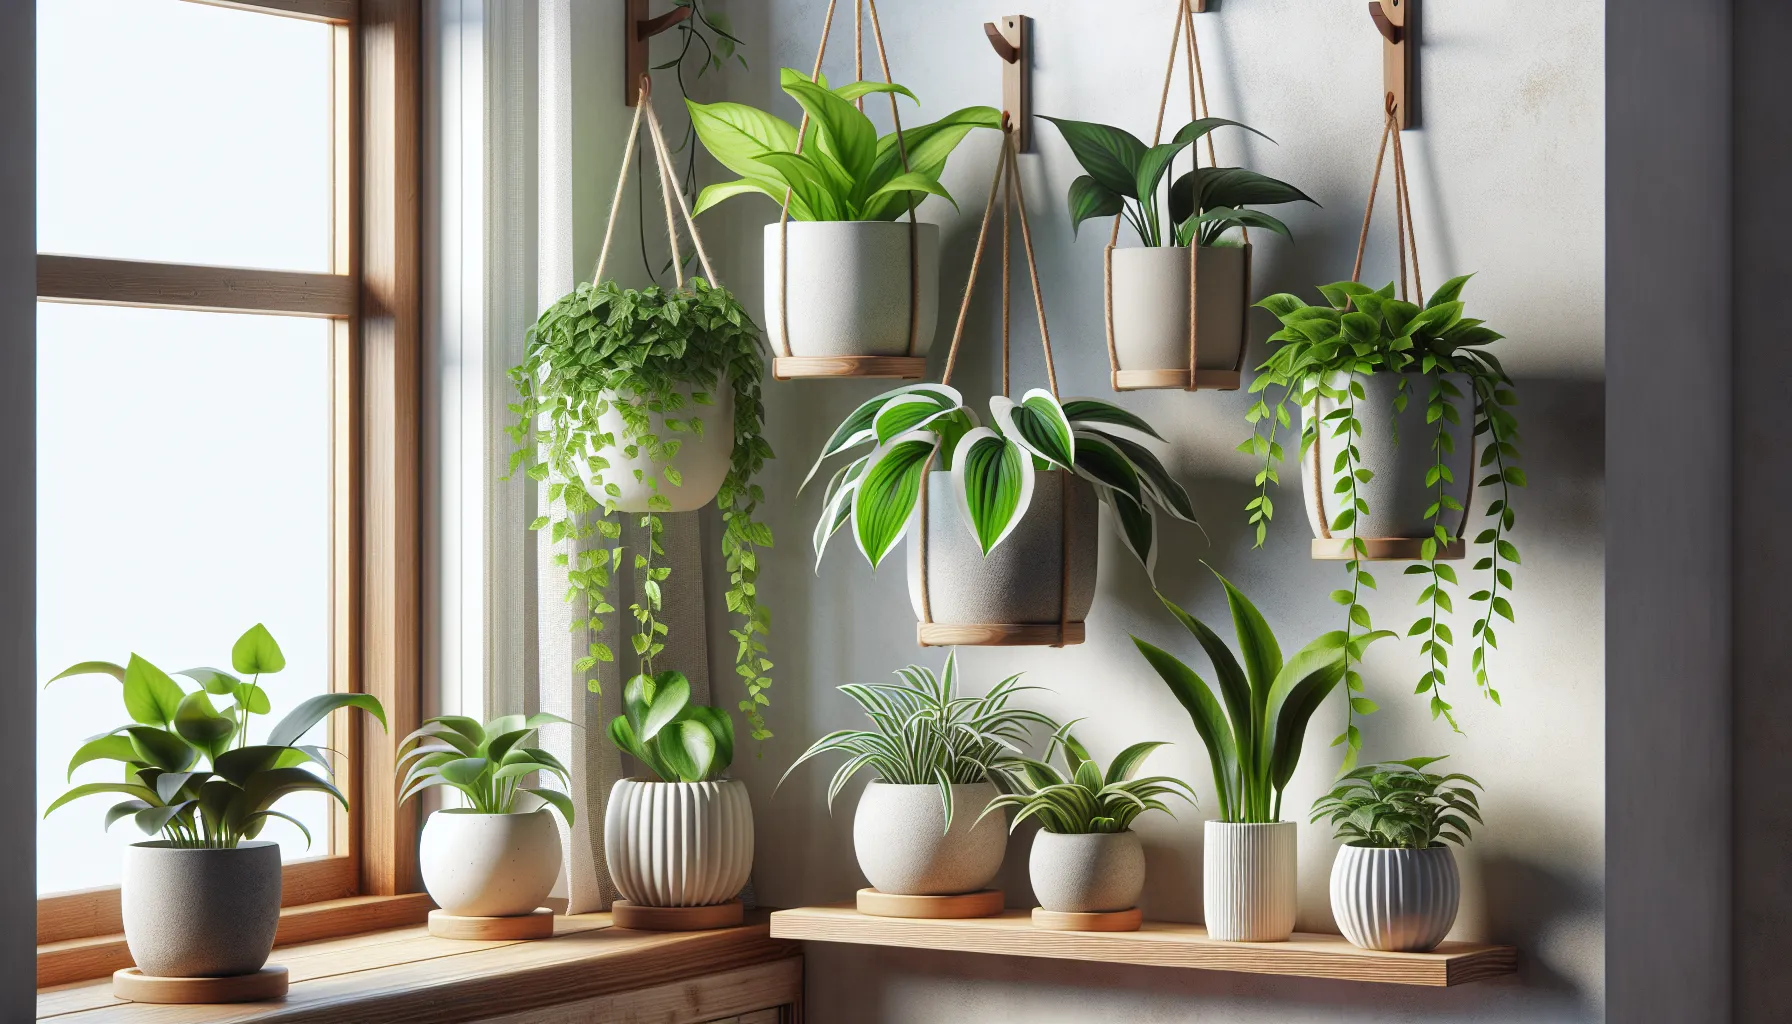 Imagen de siete plantas colgantes de interior en macetas blancas, ubicadas en una repisa junto a una ventana, con hojas verdes y saludables.